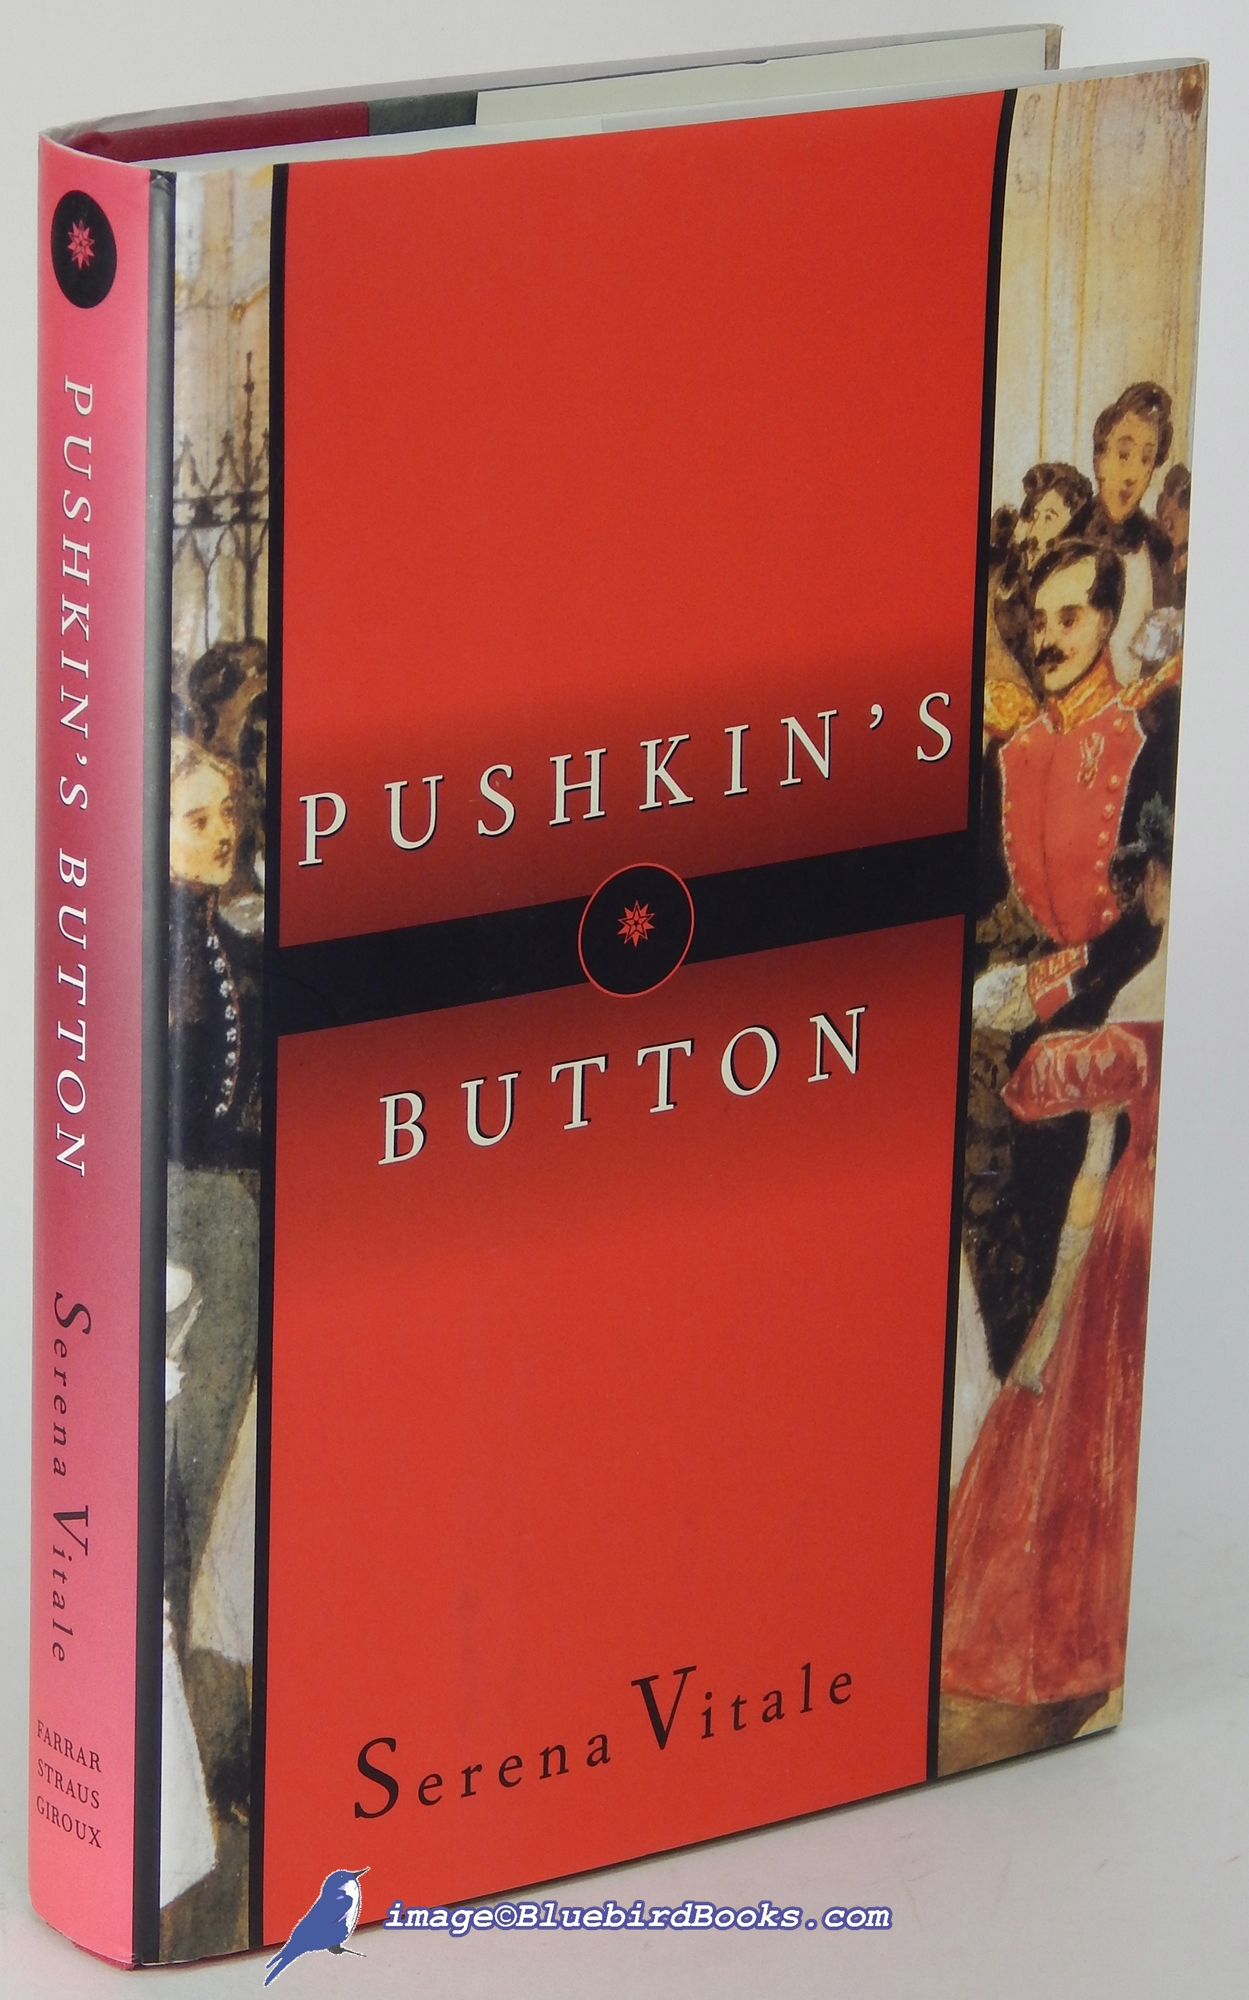 VITALE, SERENA - Pushkin's Button